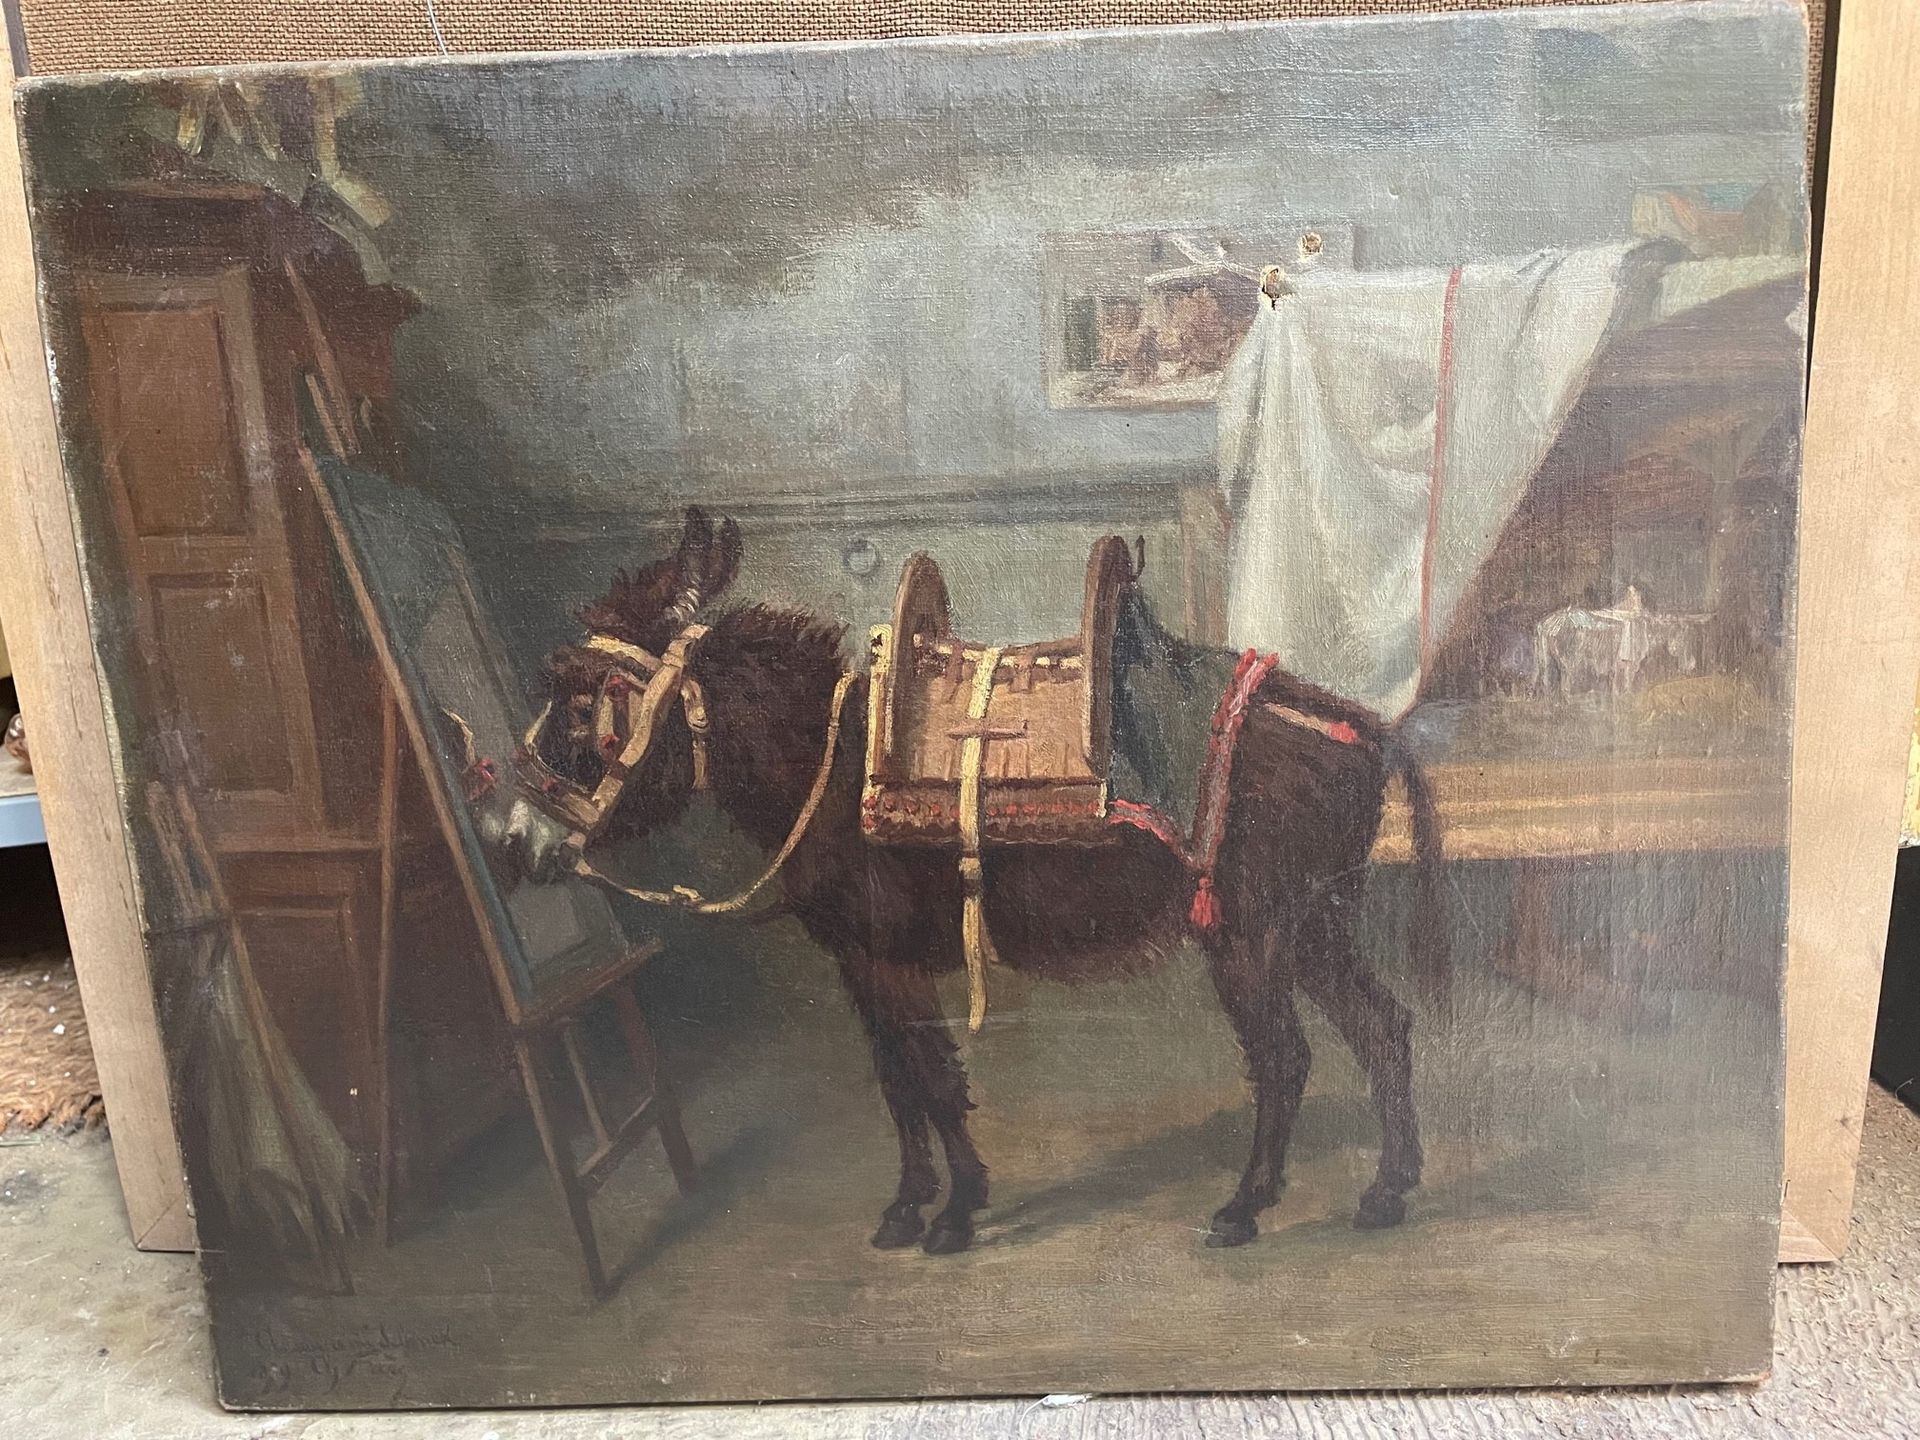 Charles-Édouard FRÈRE (1837-1894) 反映在镜子里的驴子的寓言
布面油画，左下方有签名、日期和献给 "给他的朋友Schenck"
&hellip;